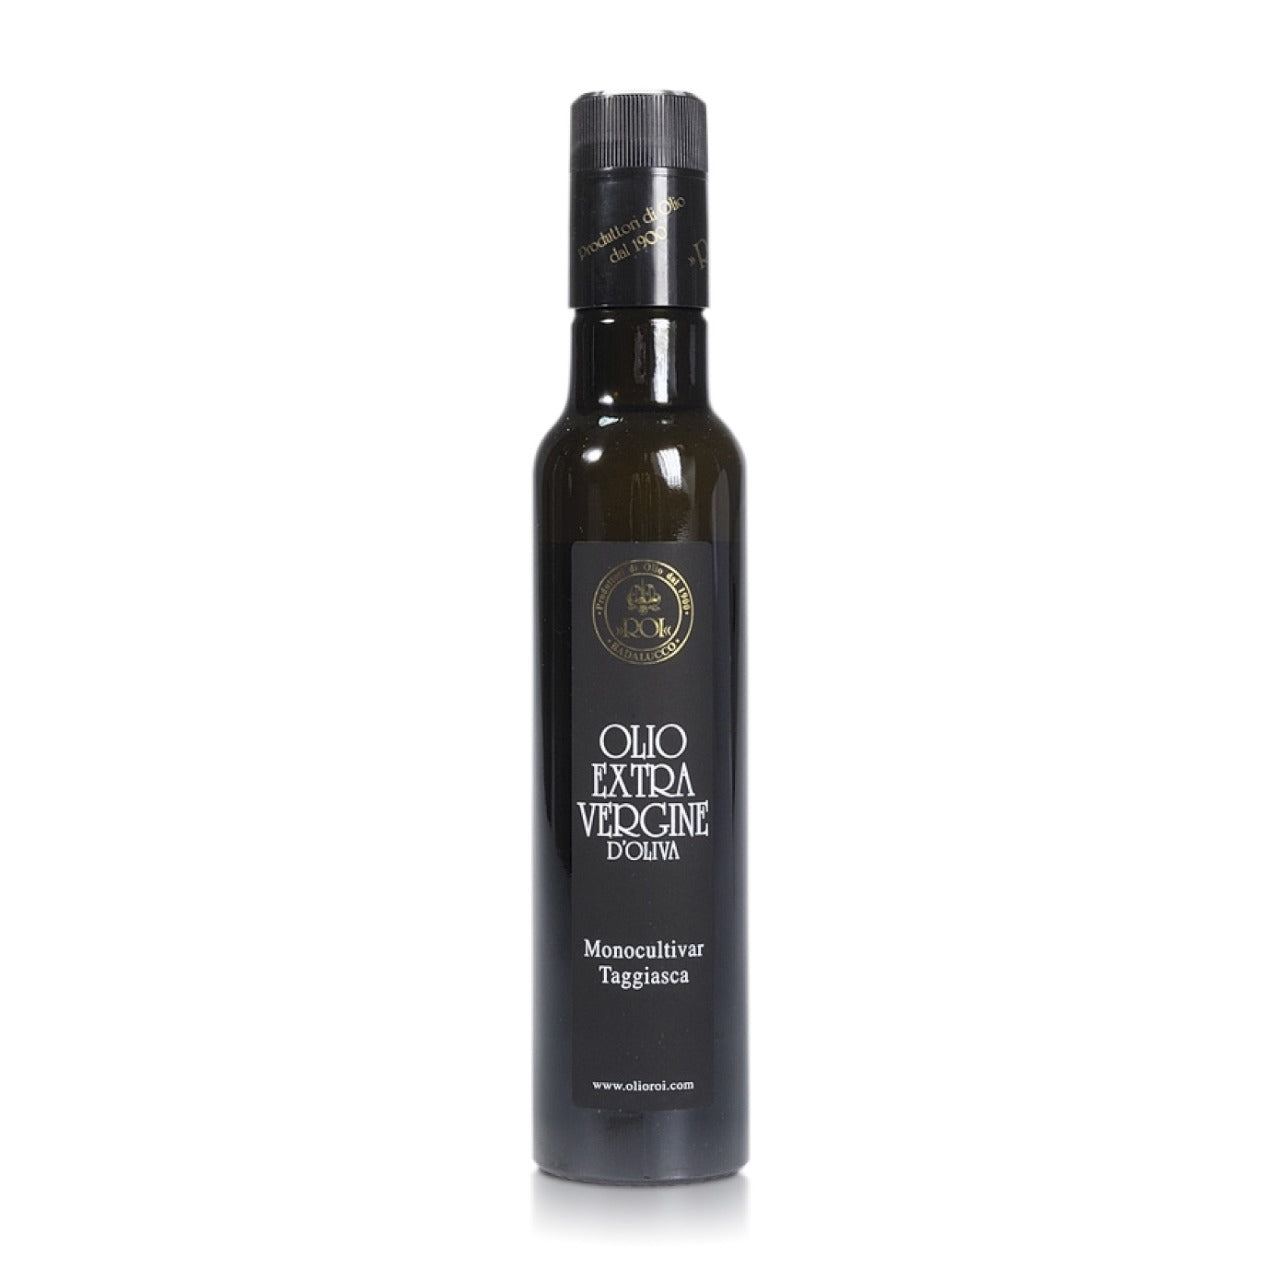 ROI Italian Extra Virgin Olive Oil